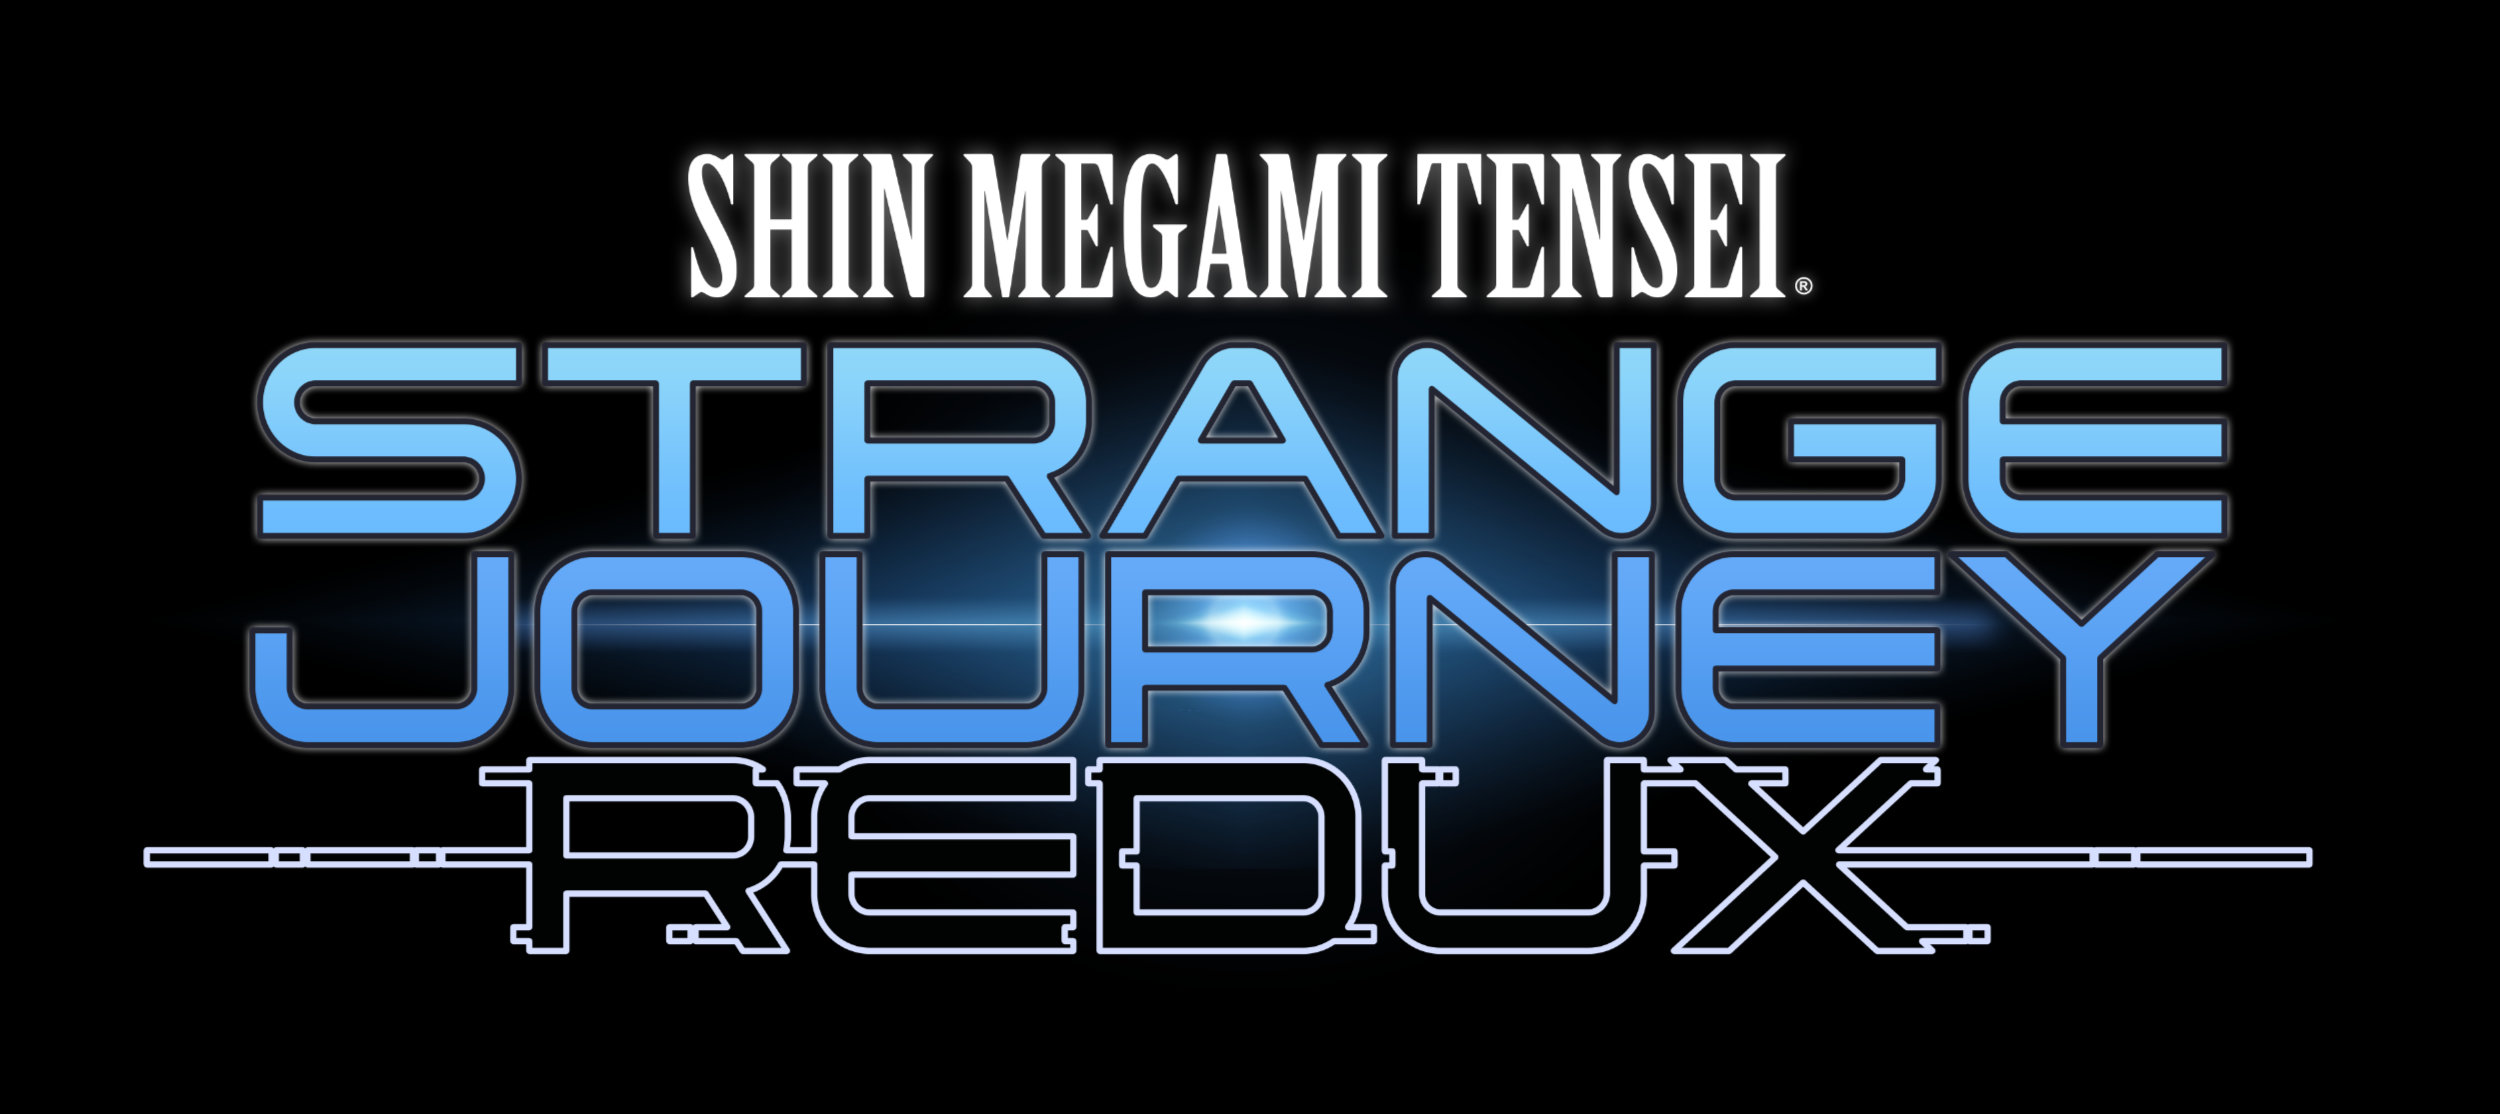 Shin Megami Tensei Strange Journey Redux Logo Black BG